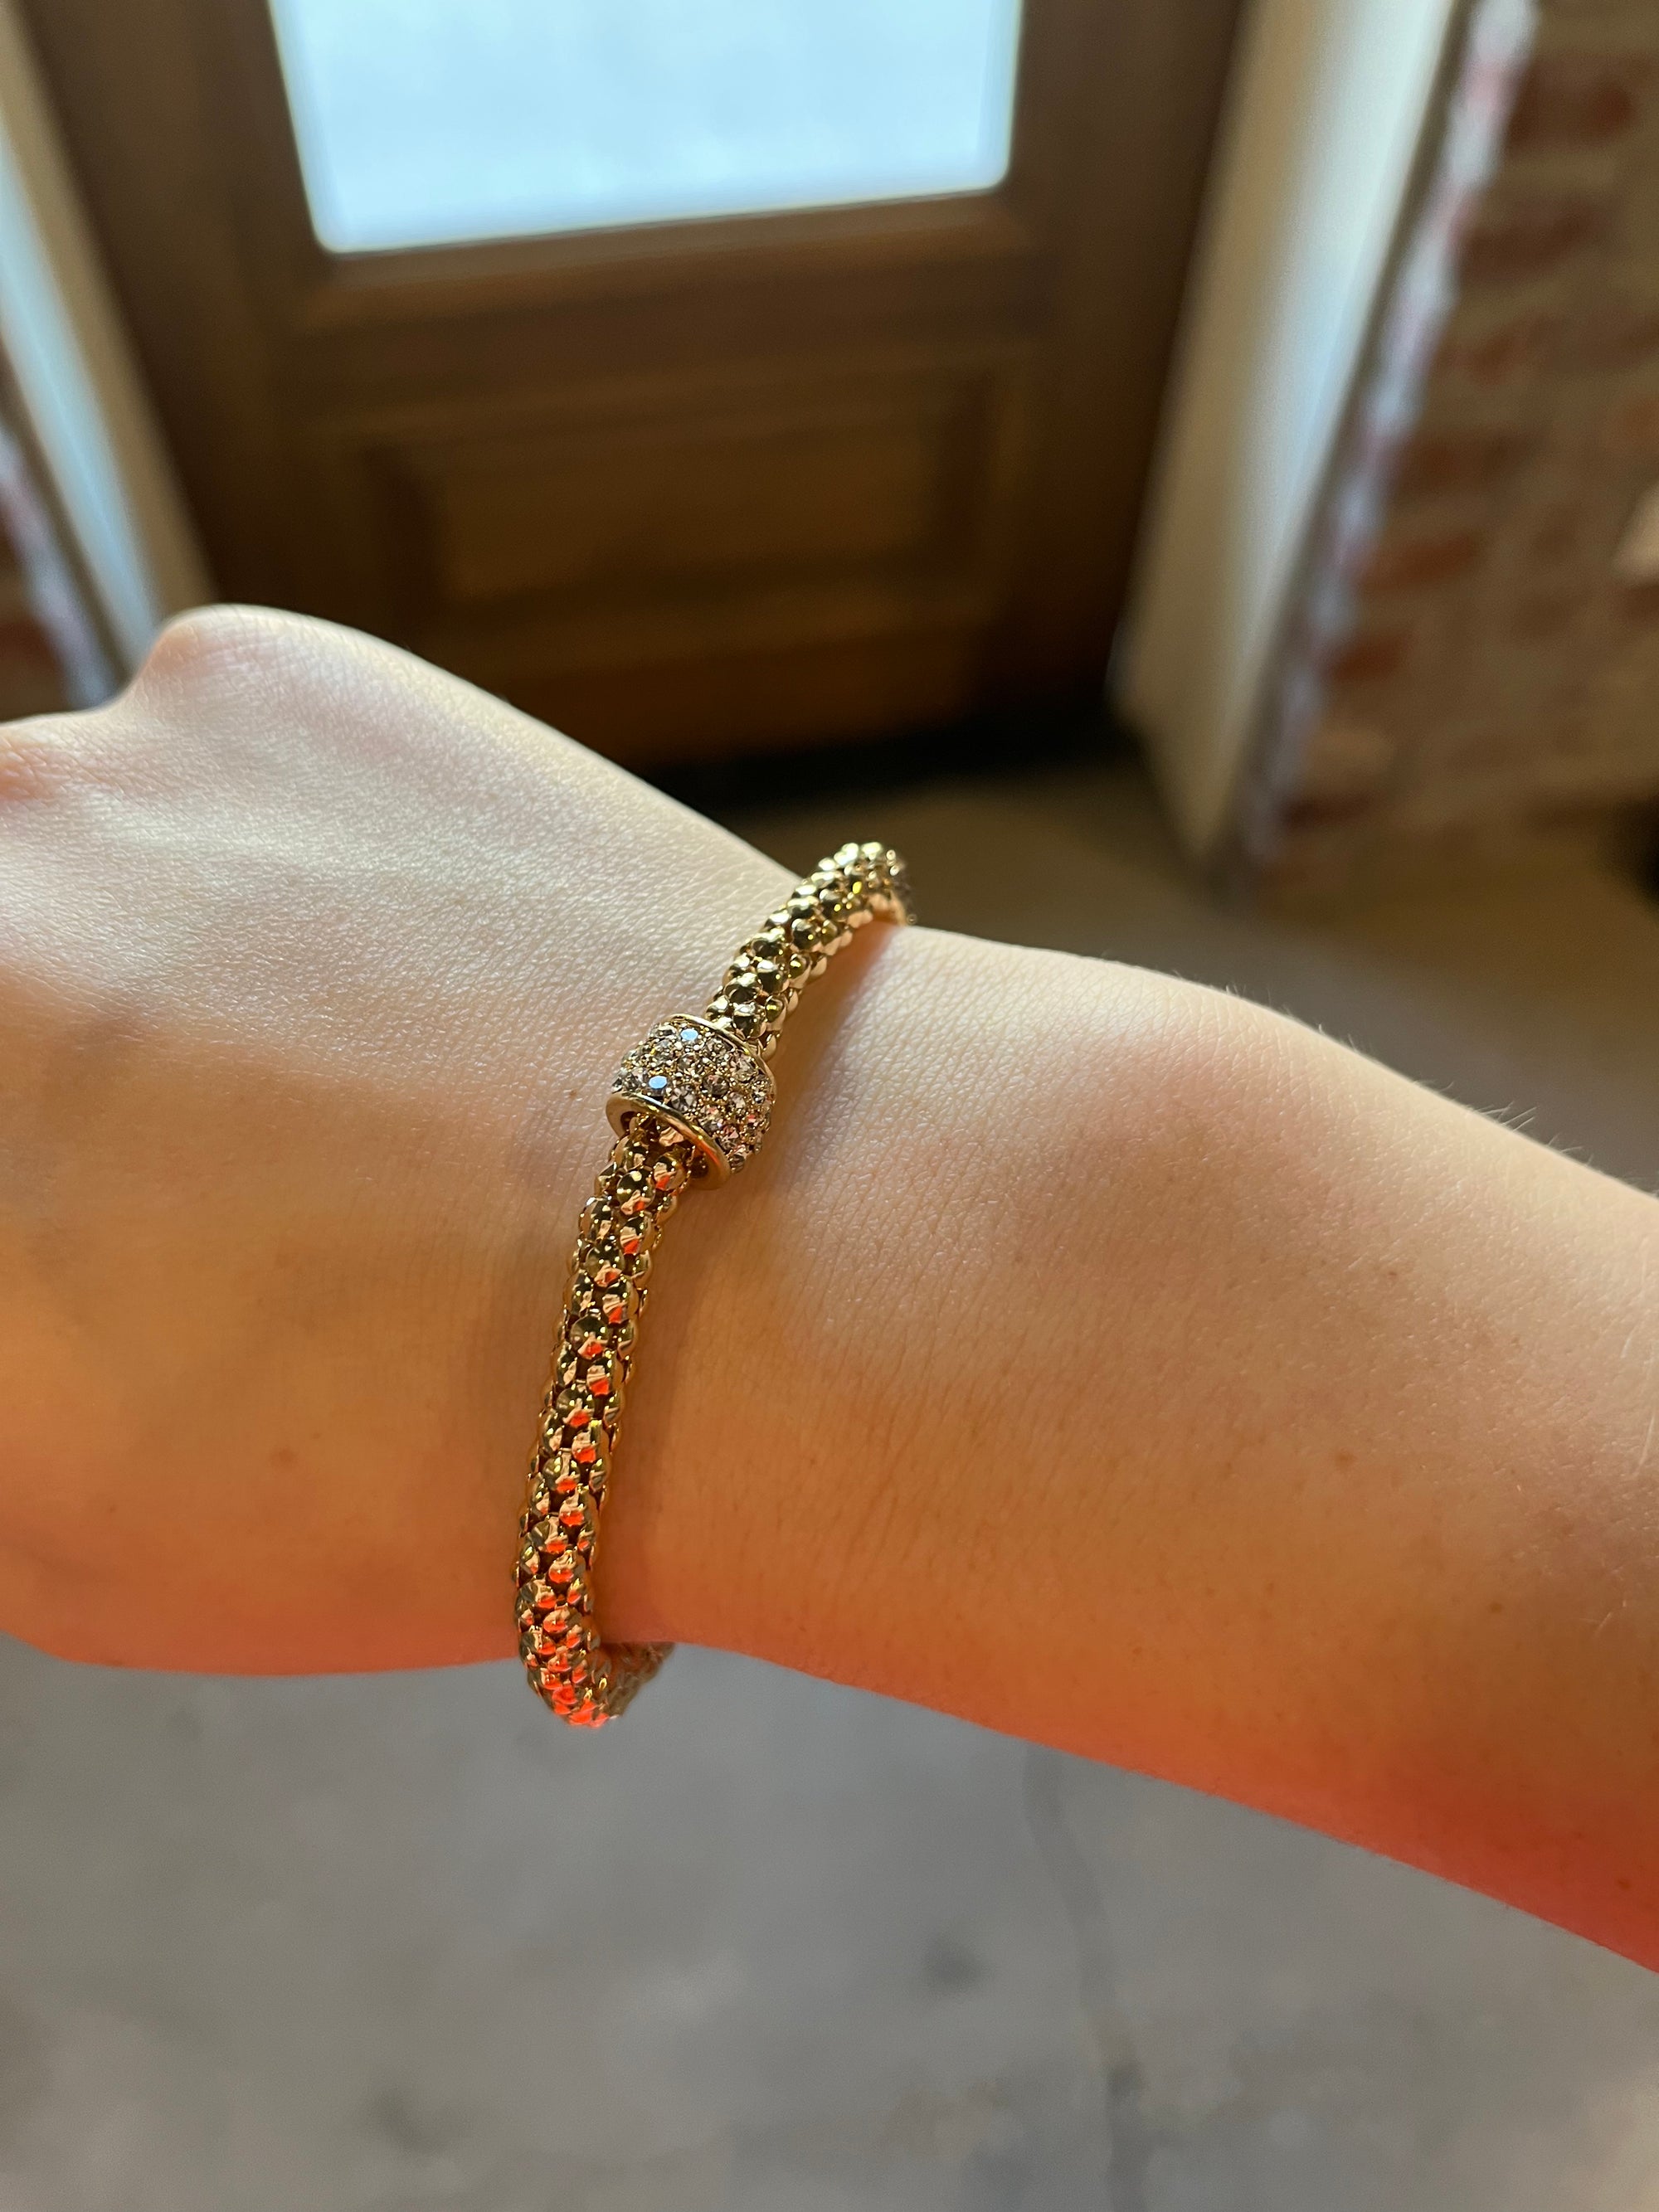 Gold - Daenerys Stretch Bracelet with Rhinestone Accents